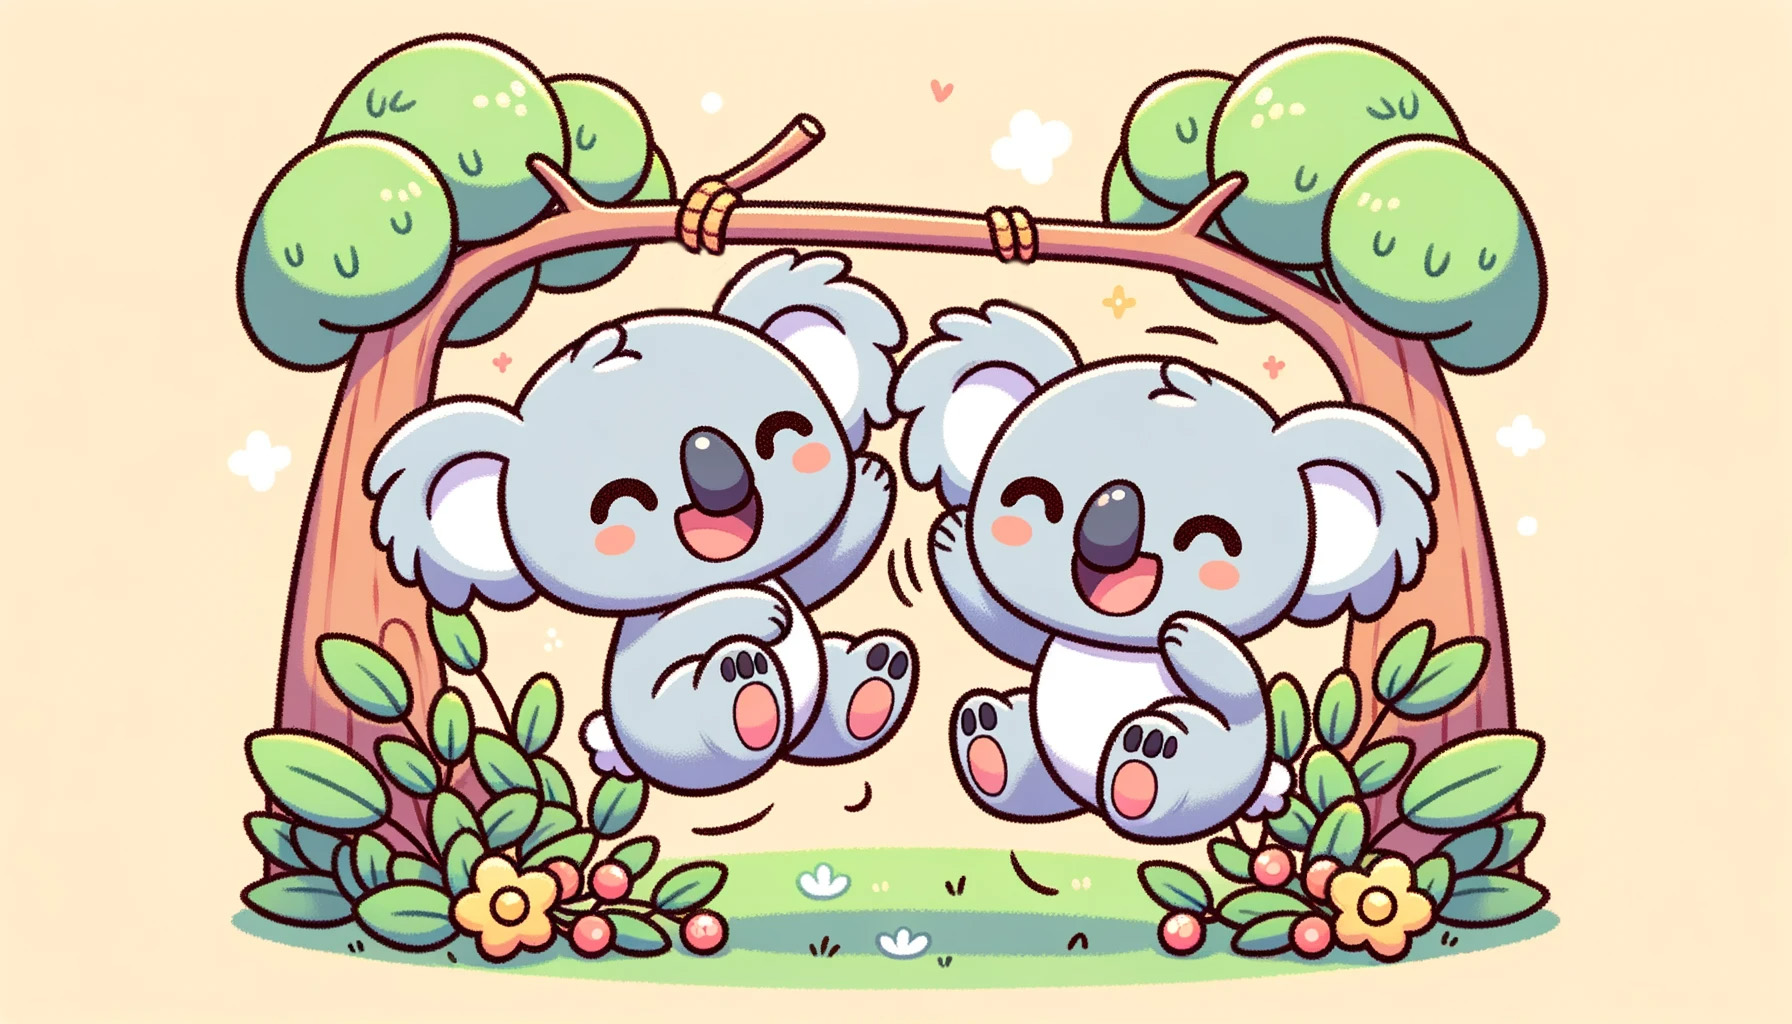 2 cute cartoon koalas playing